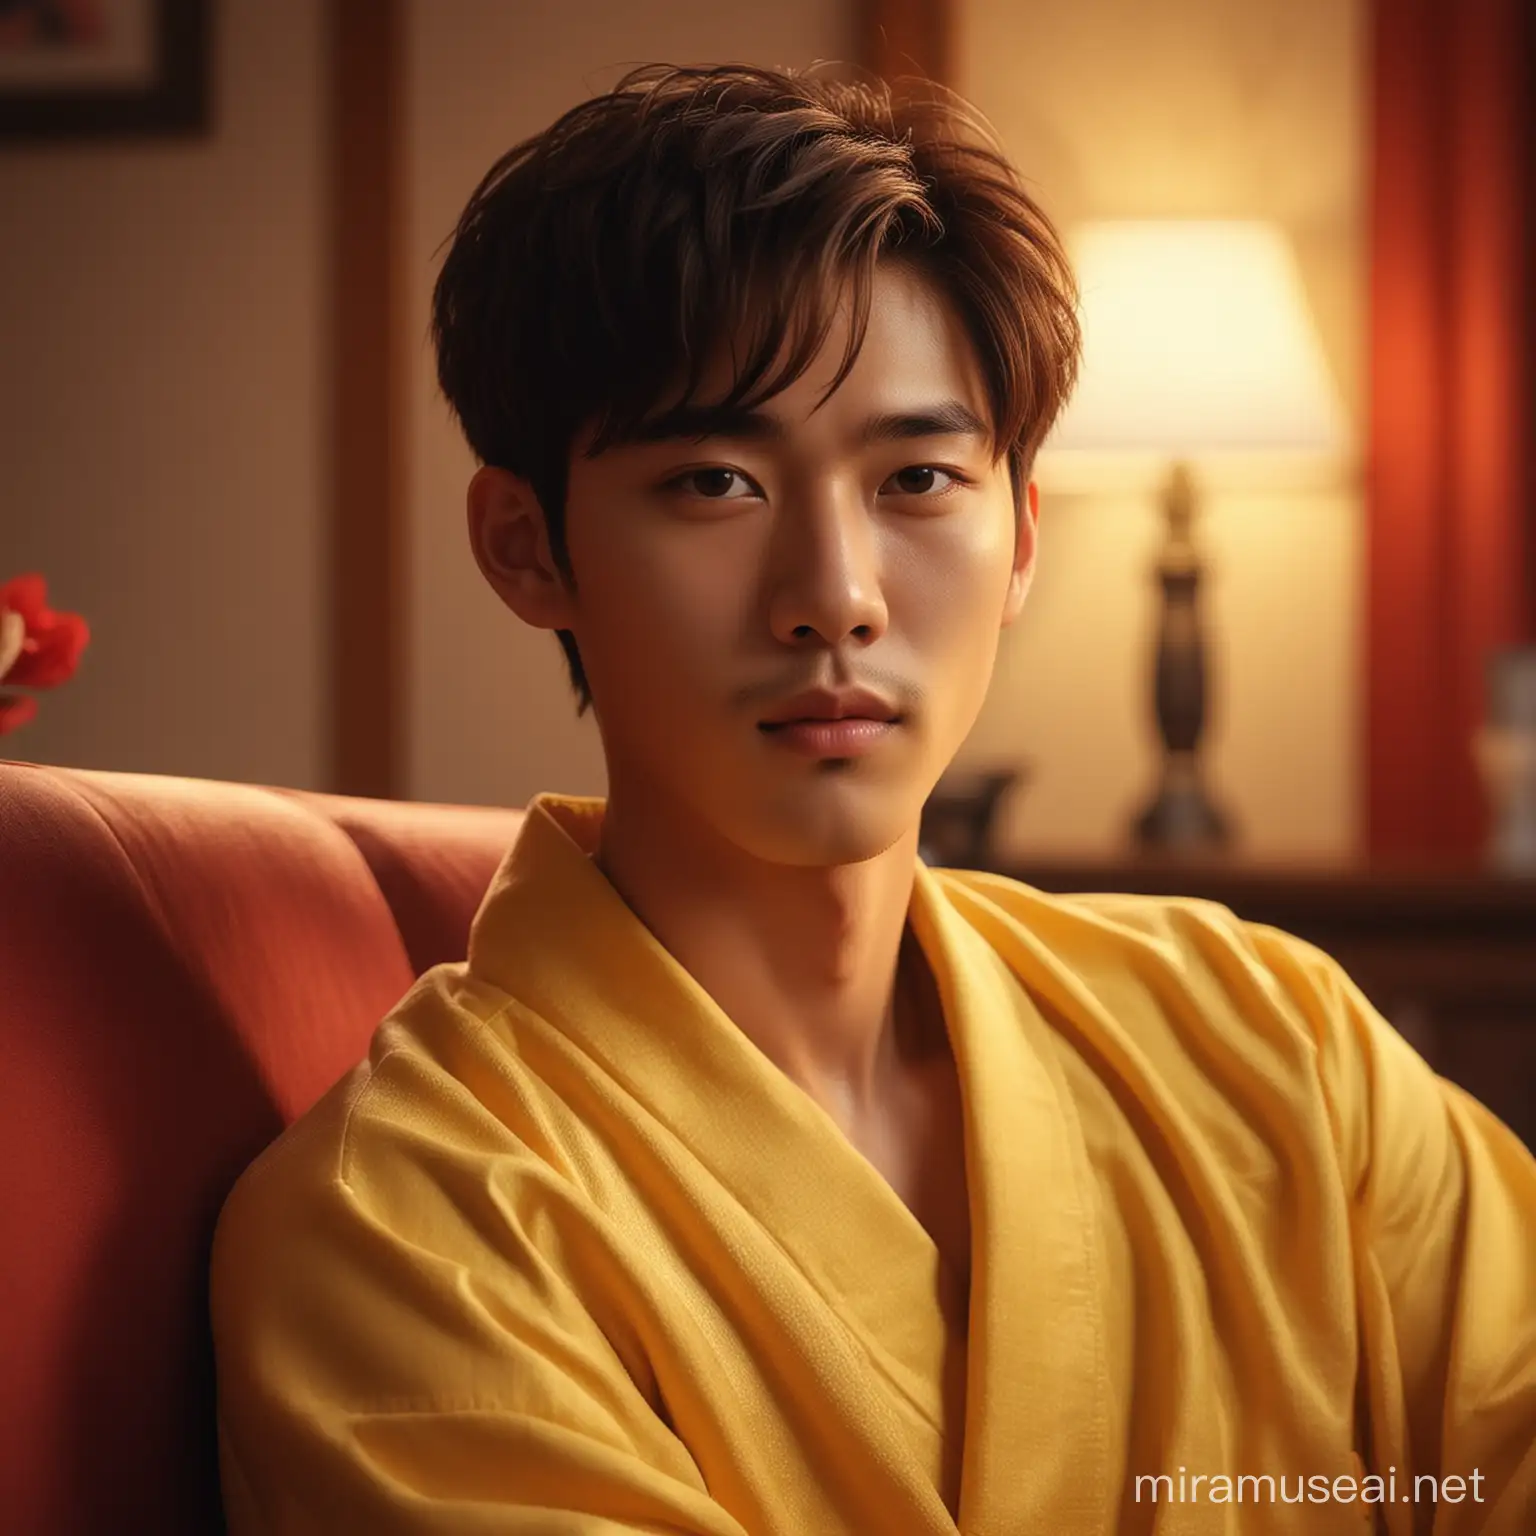 Young Korean Man in Opulent RedLit Night Room